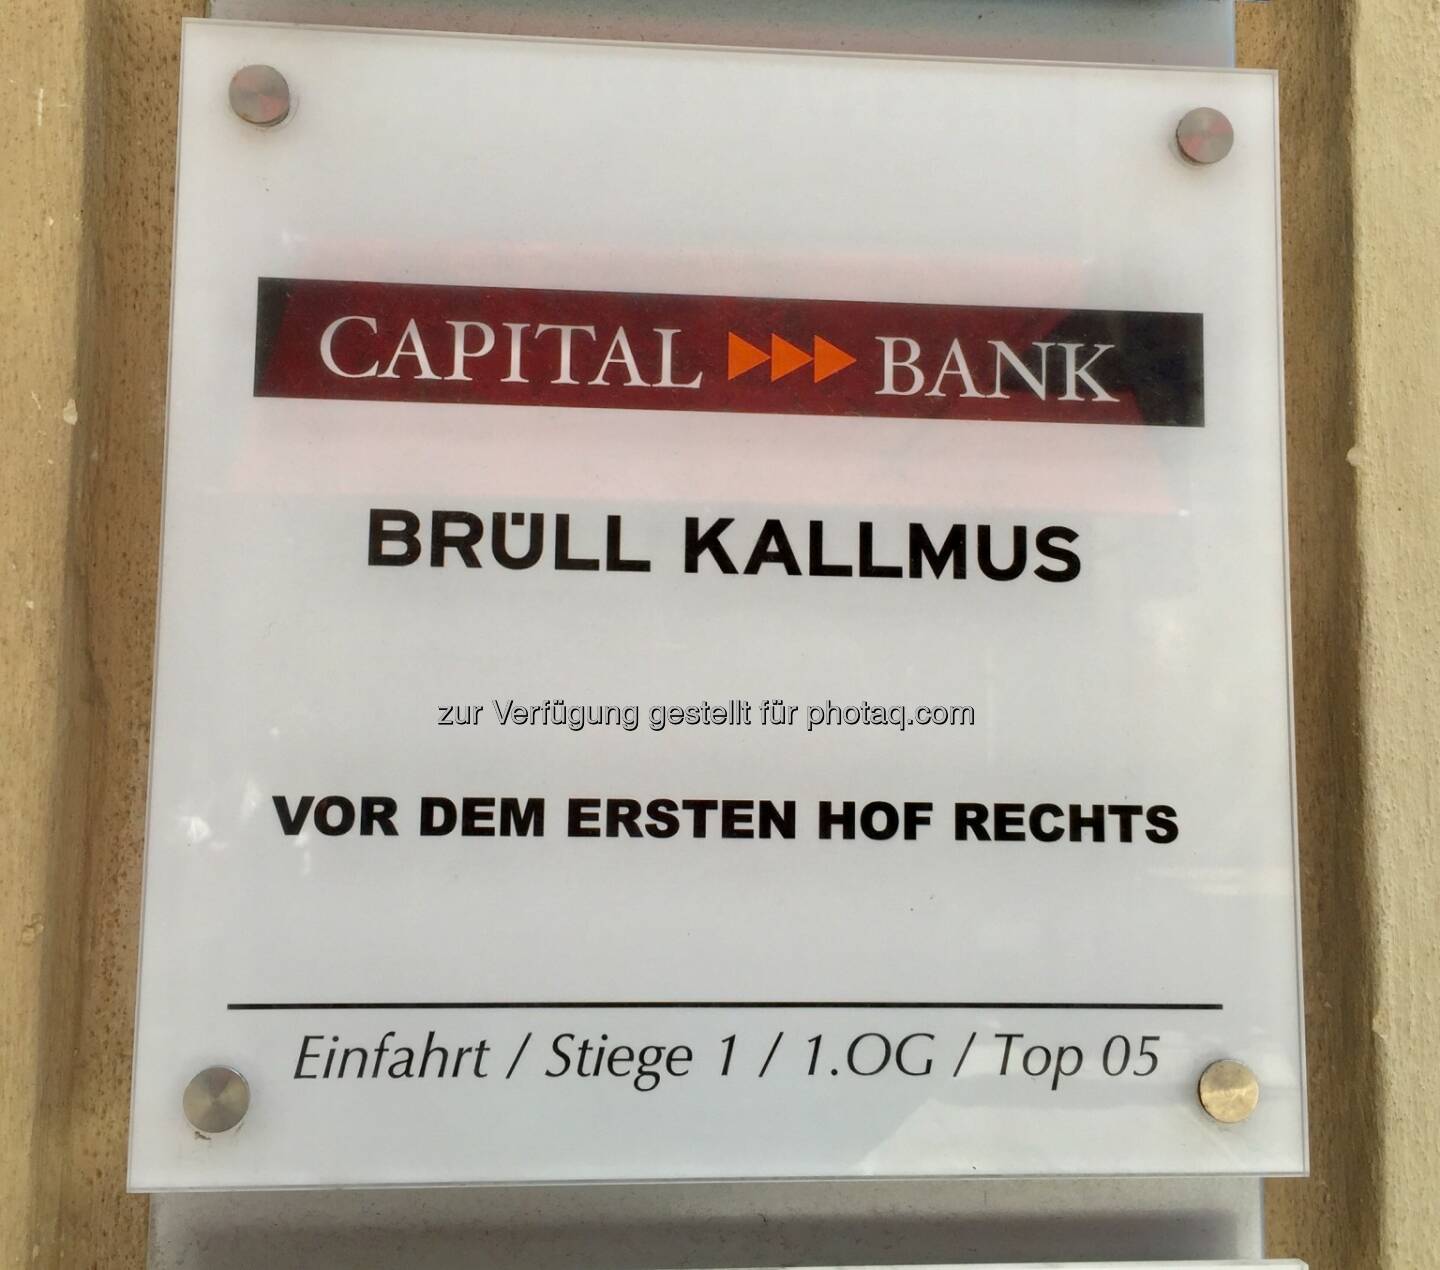 Bank Brüll Kallmus, Wallnerstraße, 17.4.19